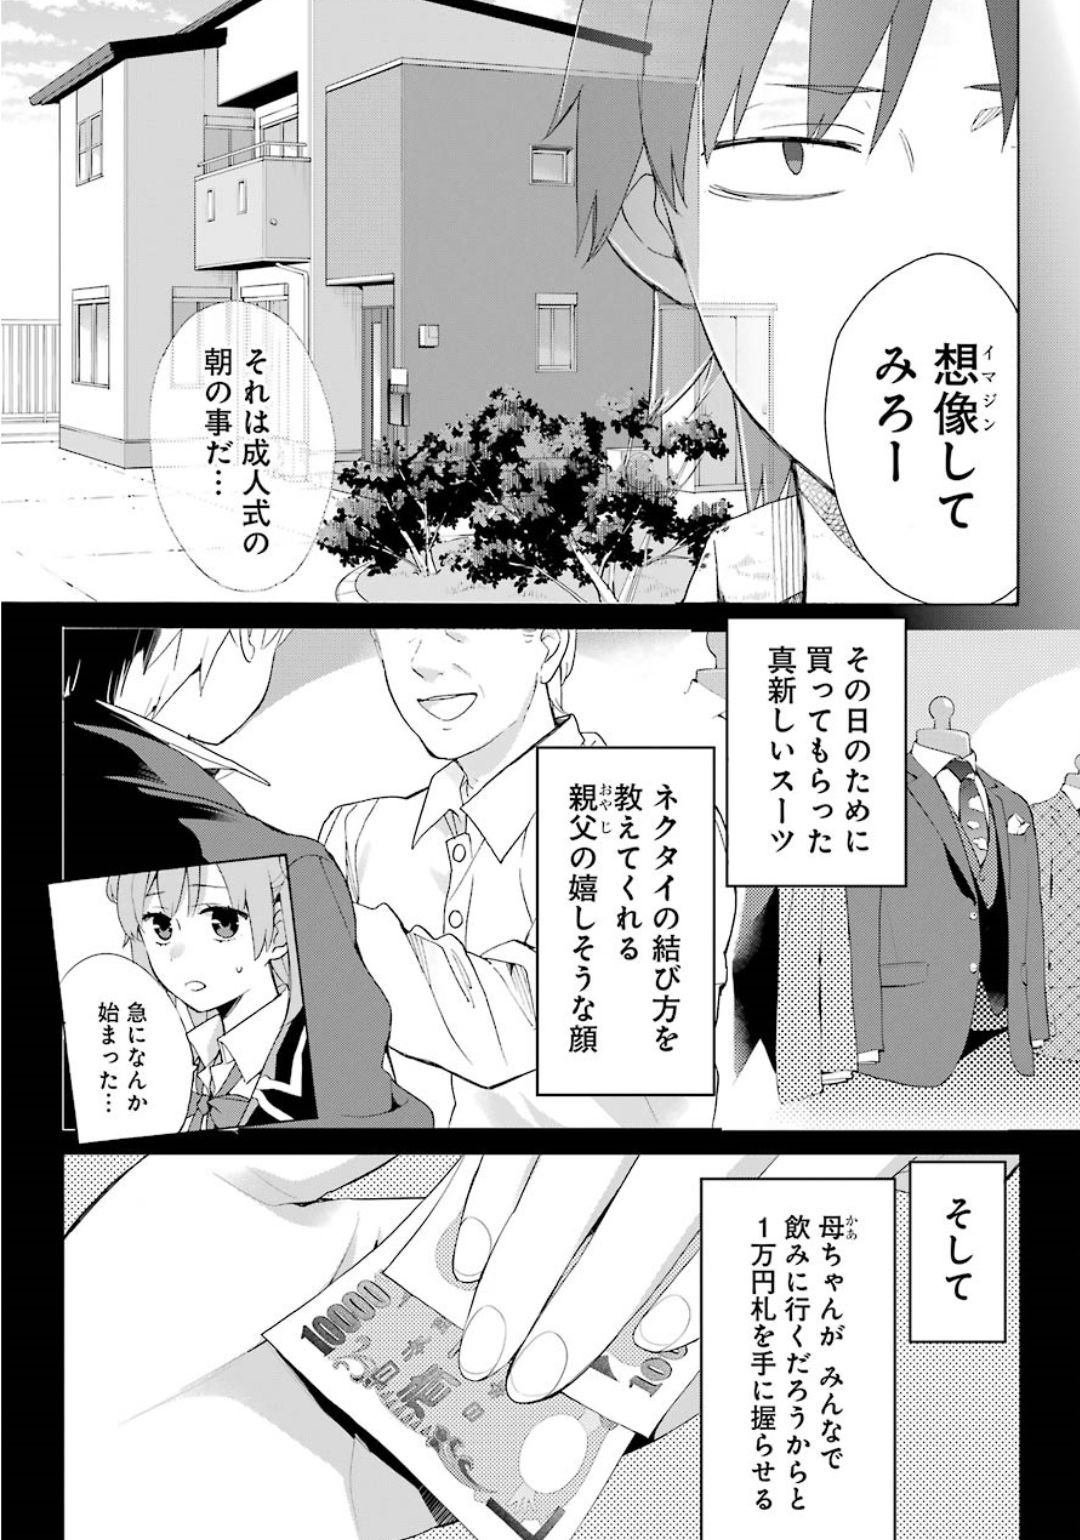 Yahari Ore no Seishun Rabukome wa Machigatte Iru. - Monologue - Chapter 84 - Page 4